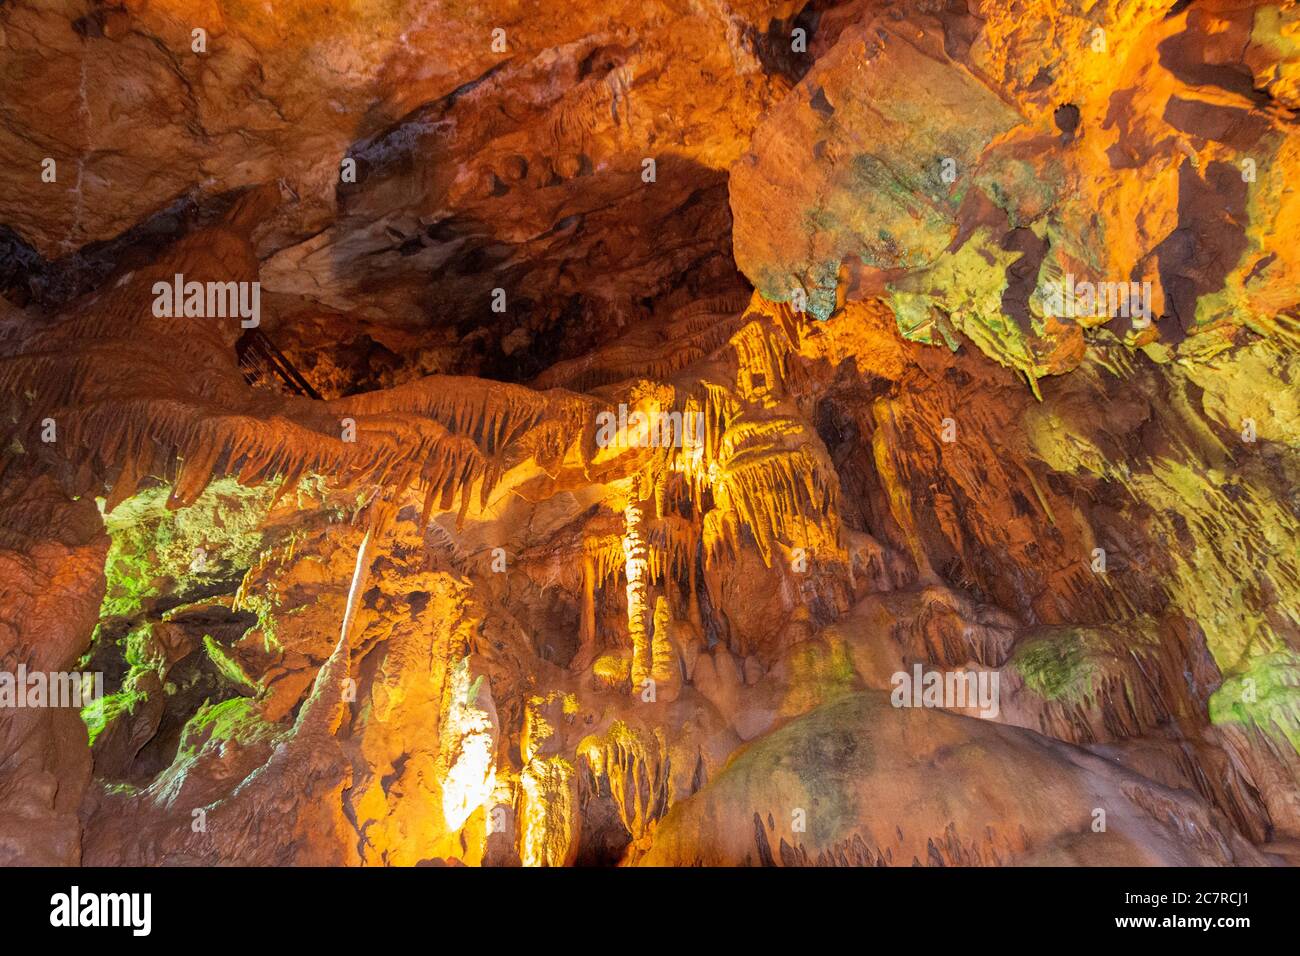 Se estima que la cueva tiene 80 millones de años. El símbolo de la cueva es una estalagmita masiva, 20 m (66 pies) de altura y 12 m (39 pies) de ancho - imagen Foto de stock